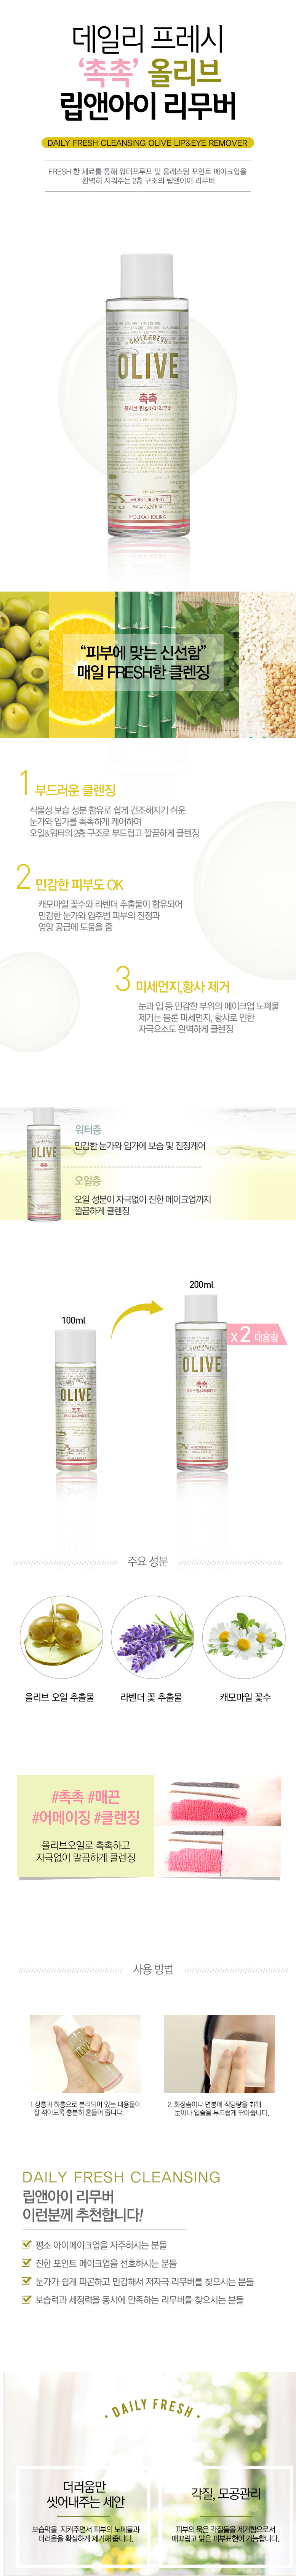 Holika Holika Daily Fresh Cleansing Olive Lip And Eye Remover 200ml malaysia singapore indonesia